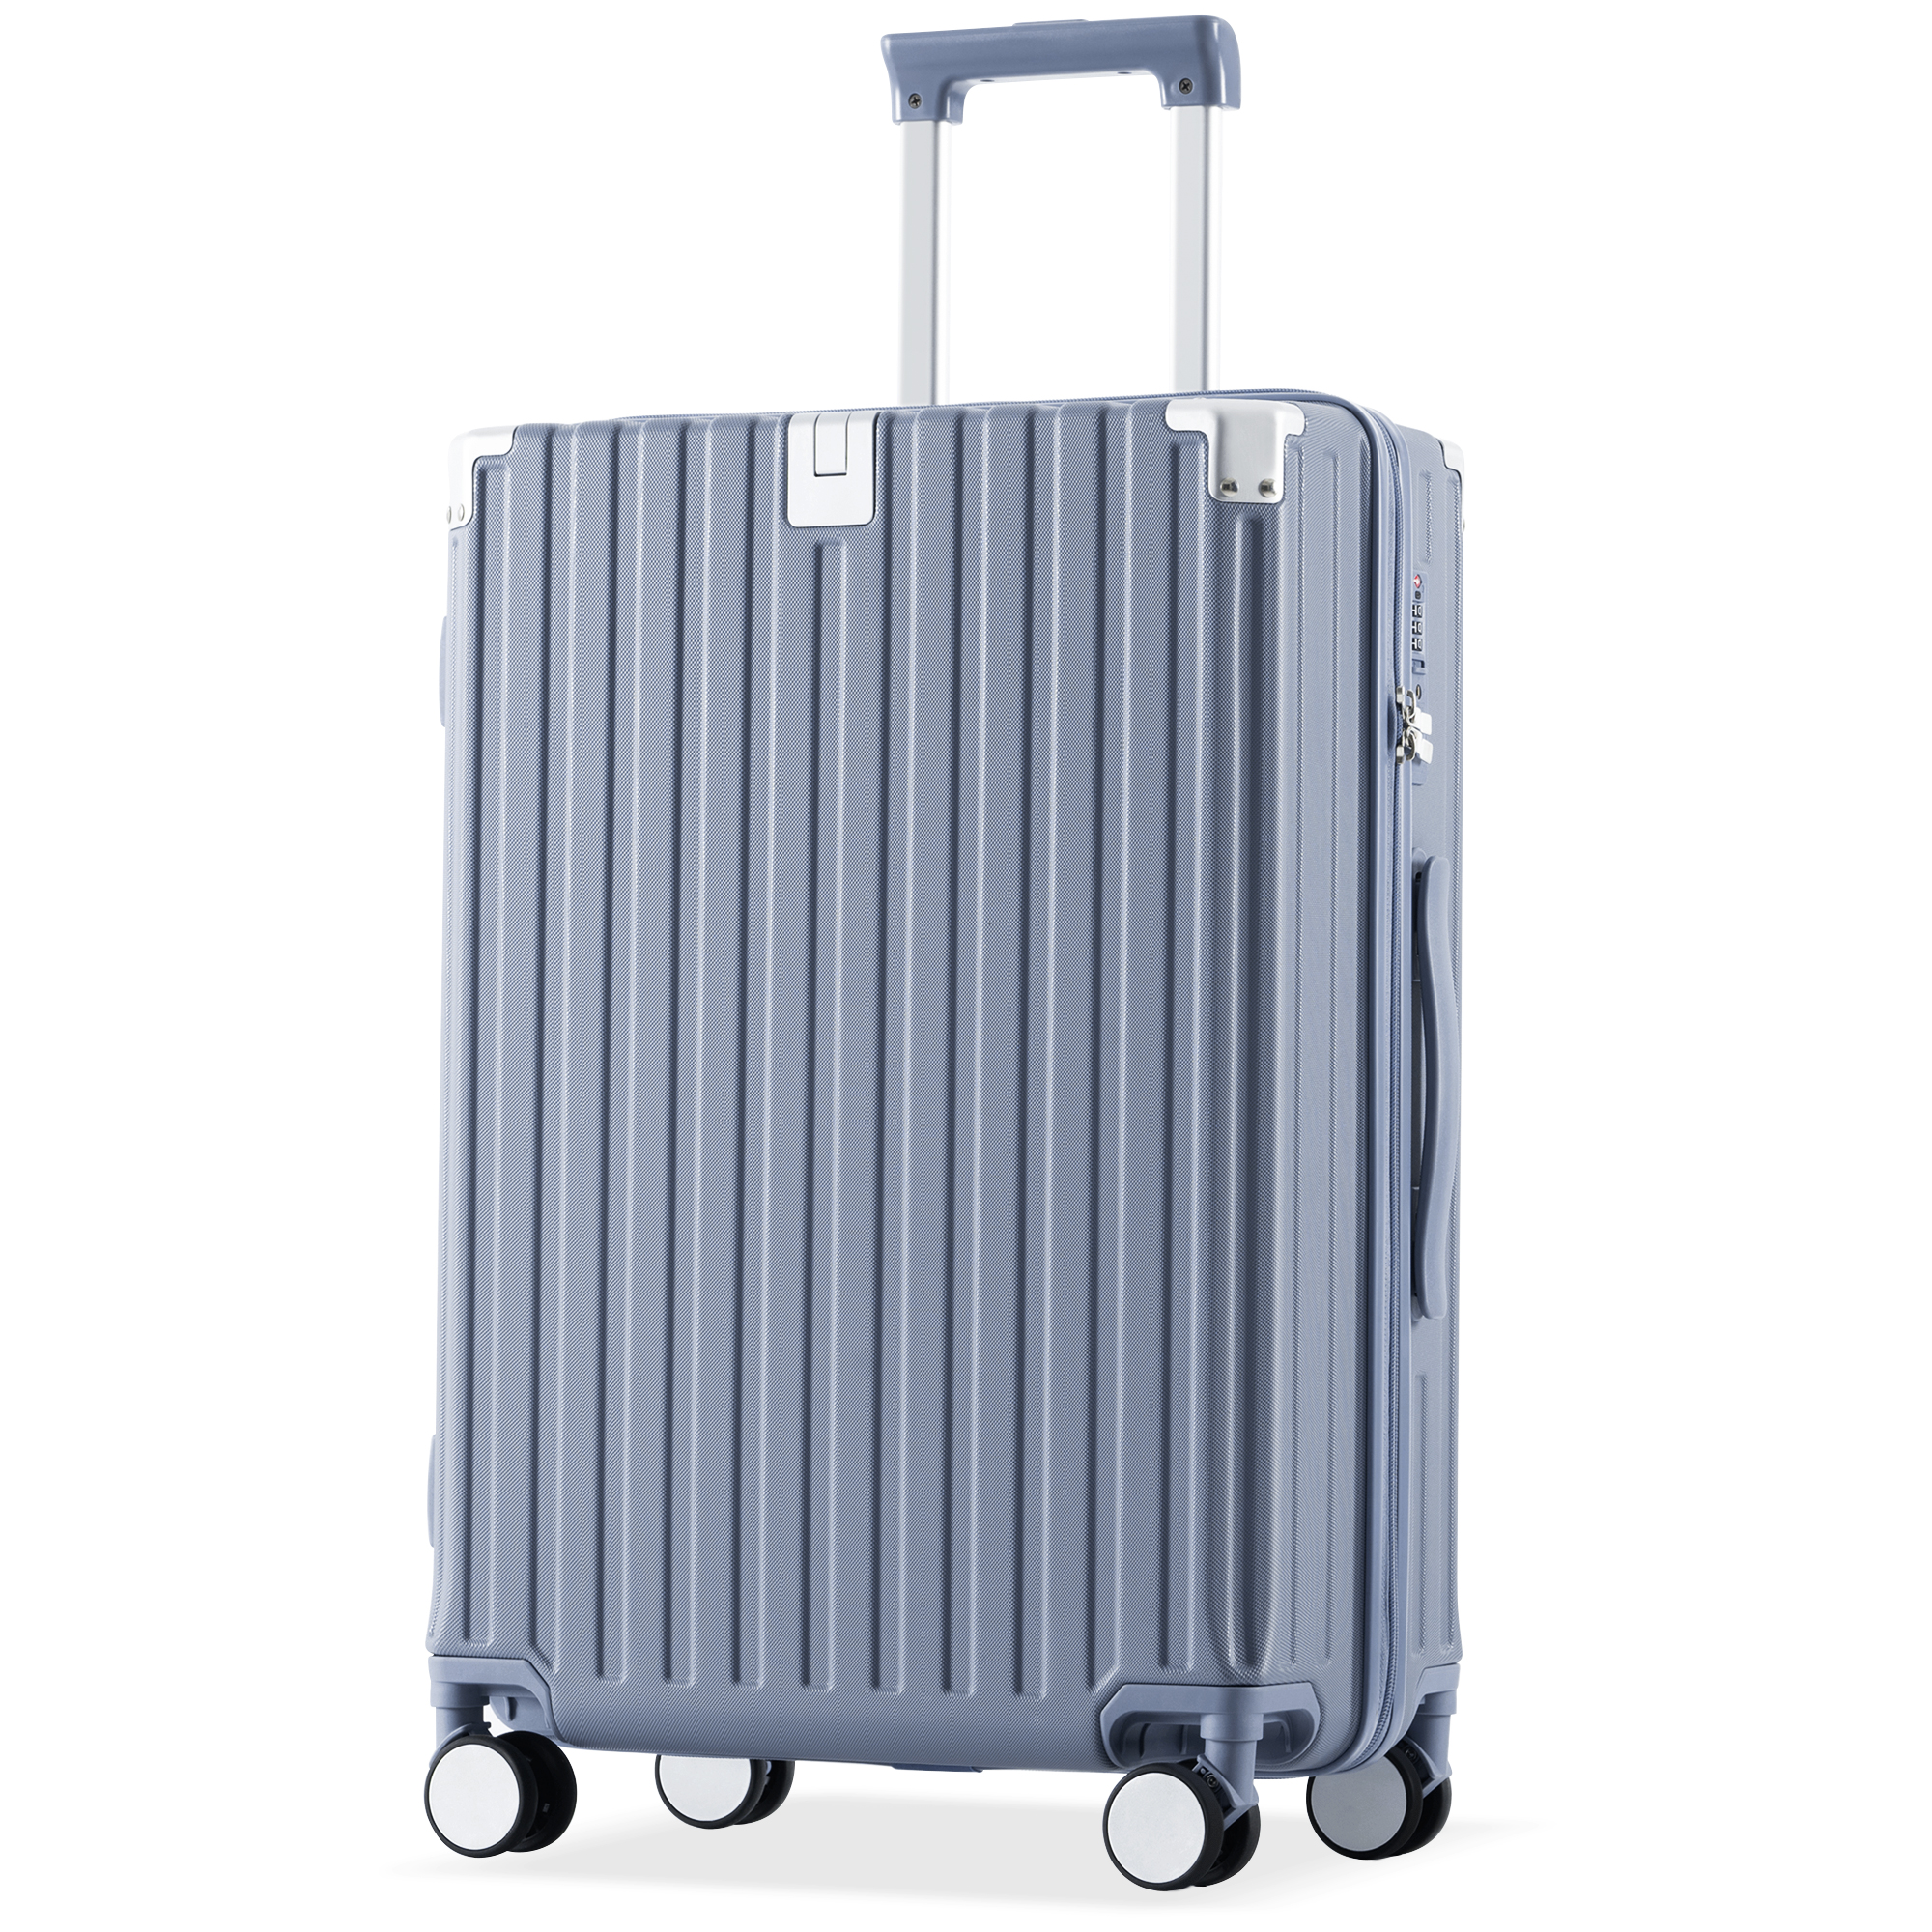 スーツケース Sサイズ キャリーケース キャリーバッグストッパー付き アルミコーナーパッド大容量超軽量 ファスナー suitcase TANOBI